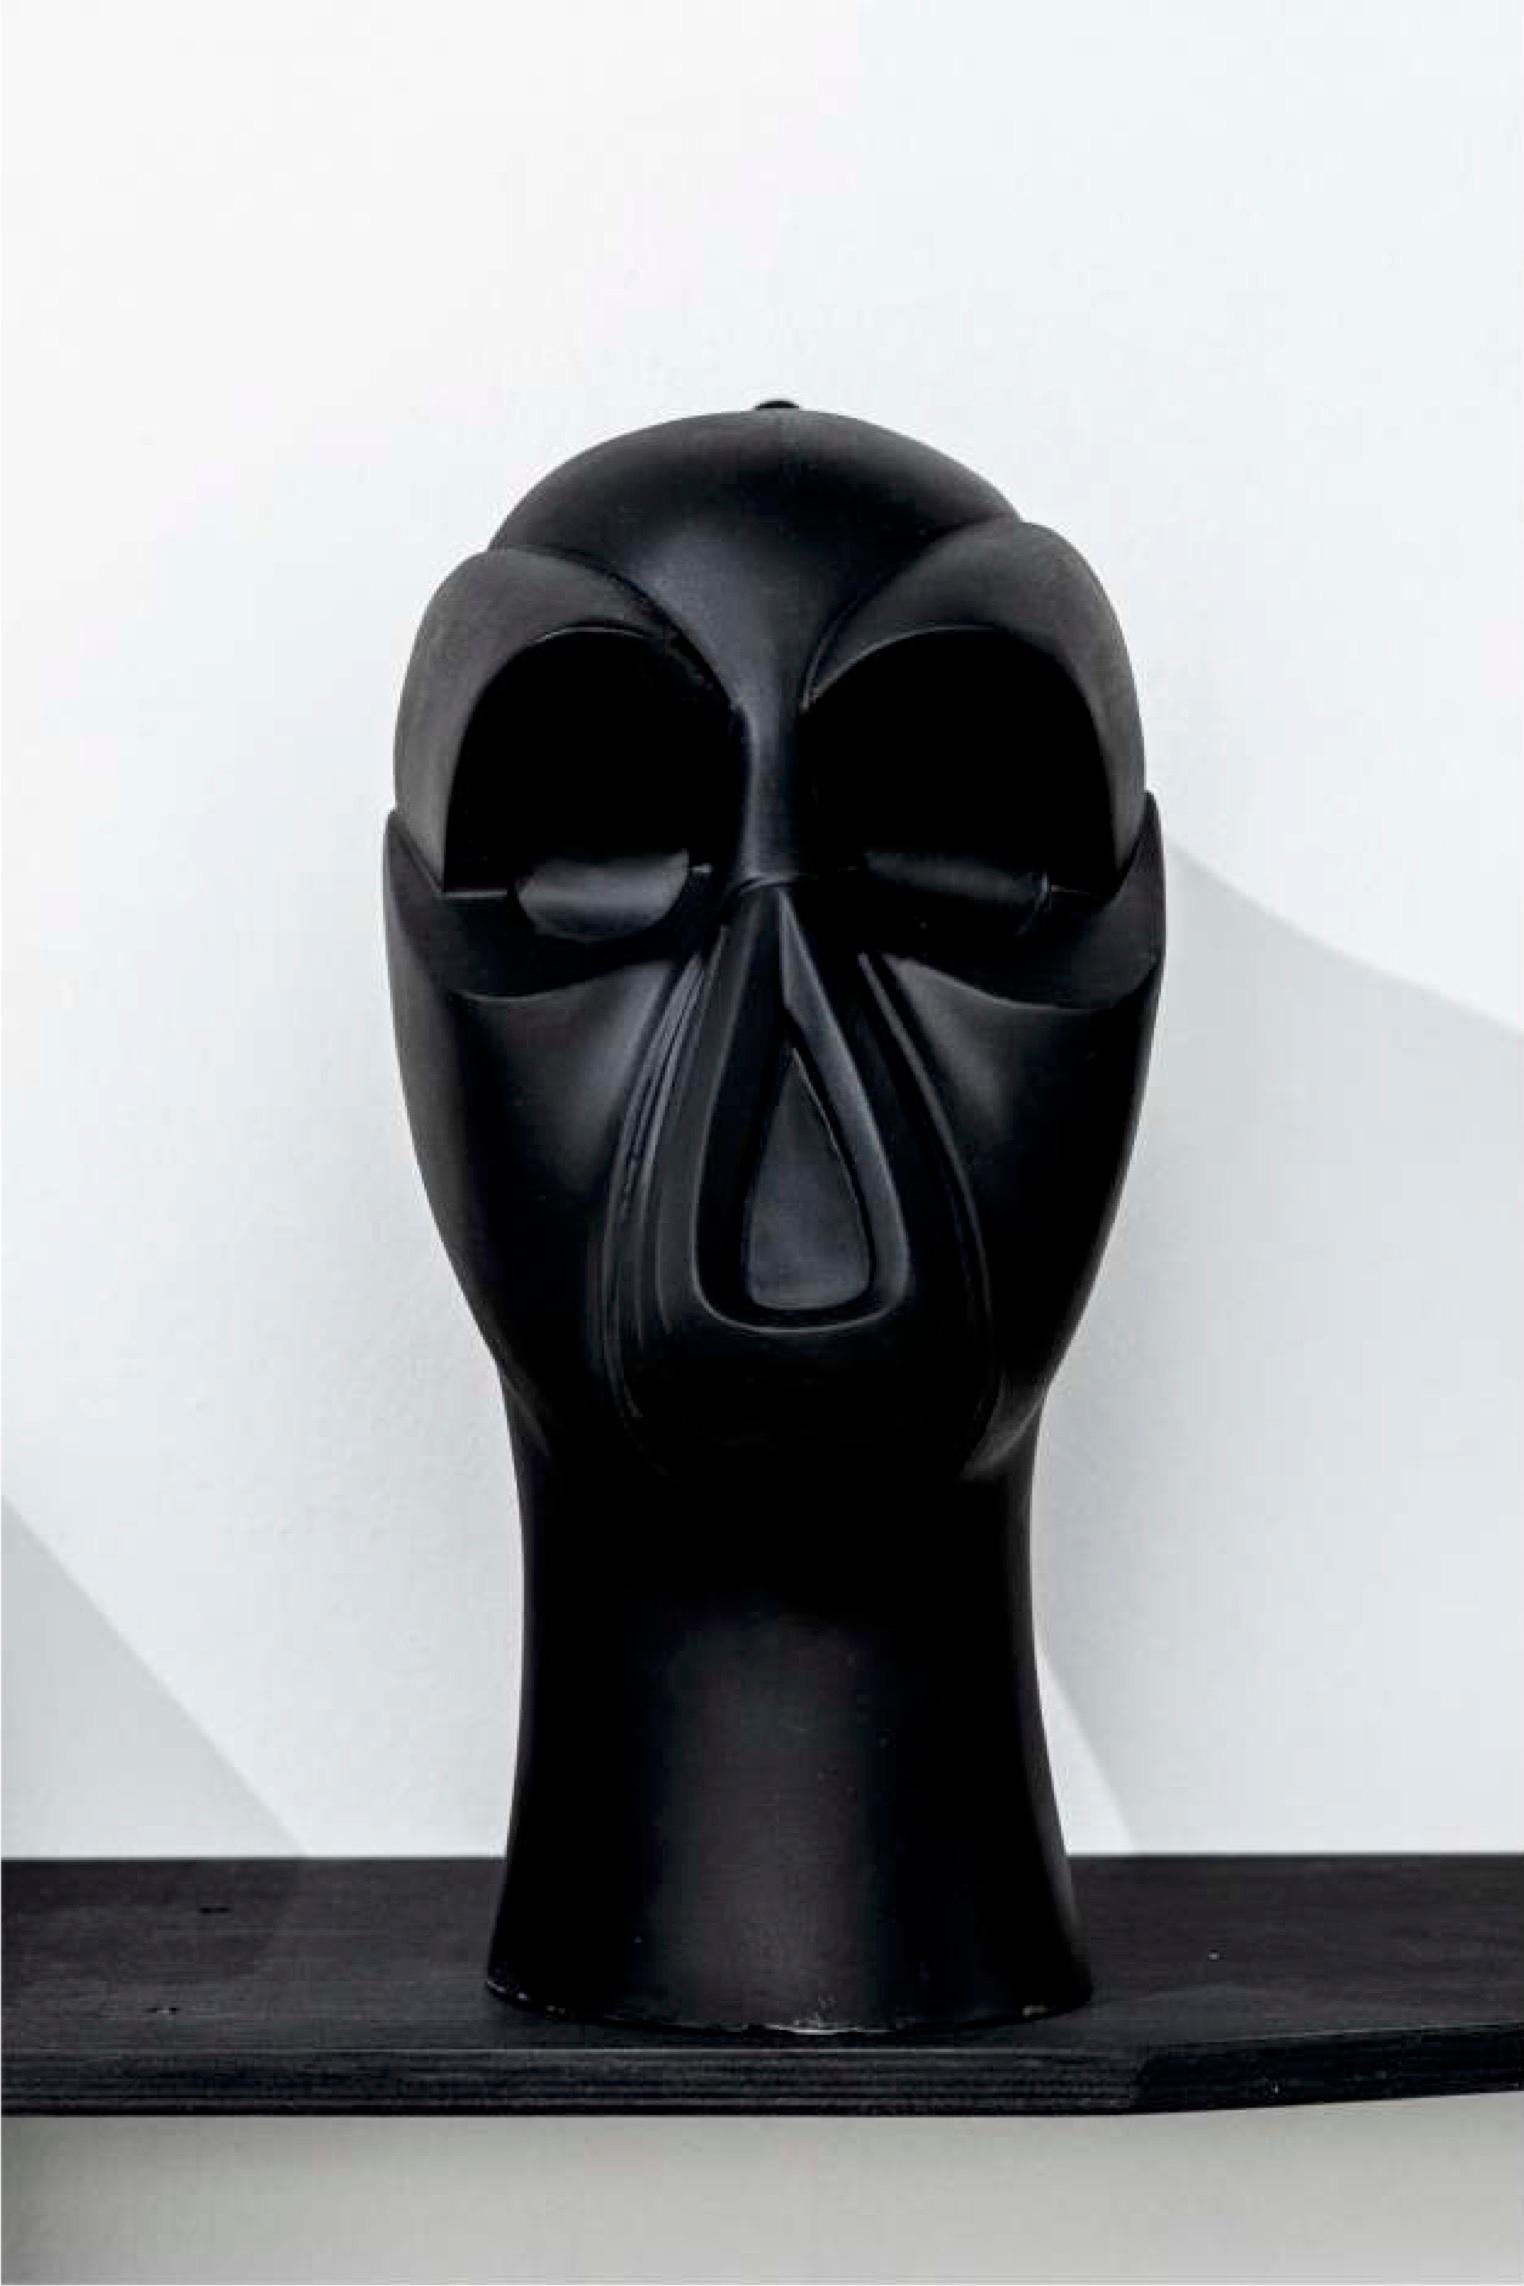 „Mask of the Minister of Education“ Skulptur 16" x 13" in von Gosha Ostretsov

Ausgabe 2/10

Geboren 1967, in Moskau
Lebte zehn Jahre lang in Paris (1988 - 1998), lebt und arbeitet jetzt in Moskau.

ÖFFENTLICHE SAMMLUNGEN:

Die Staatliche